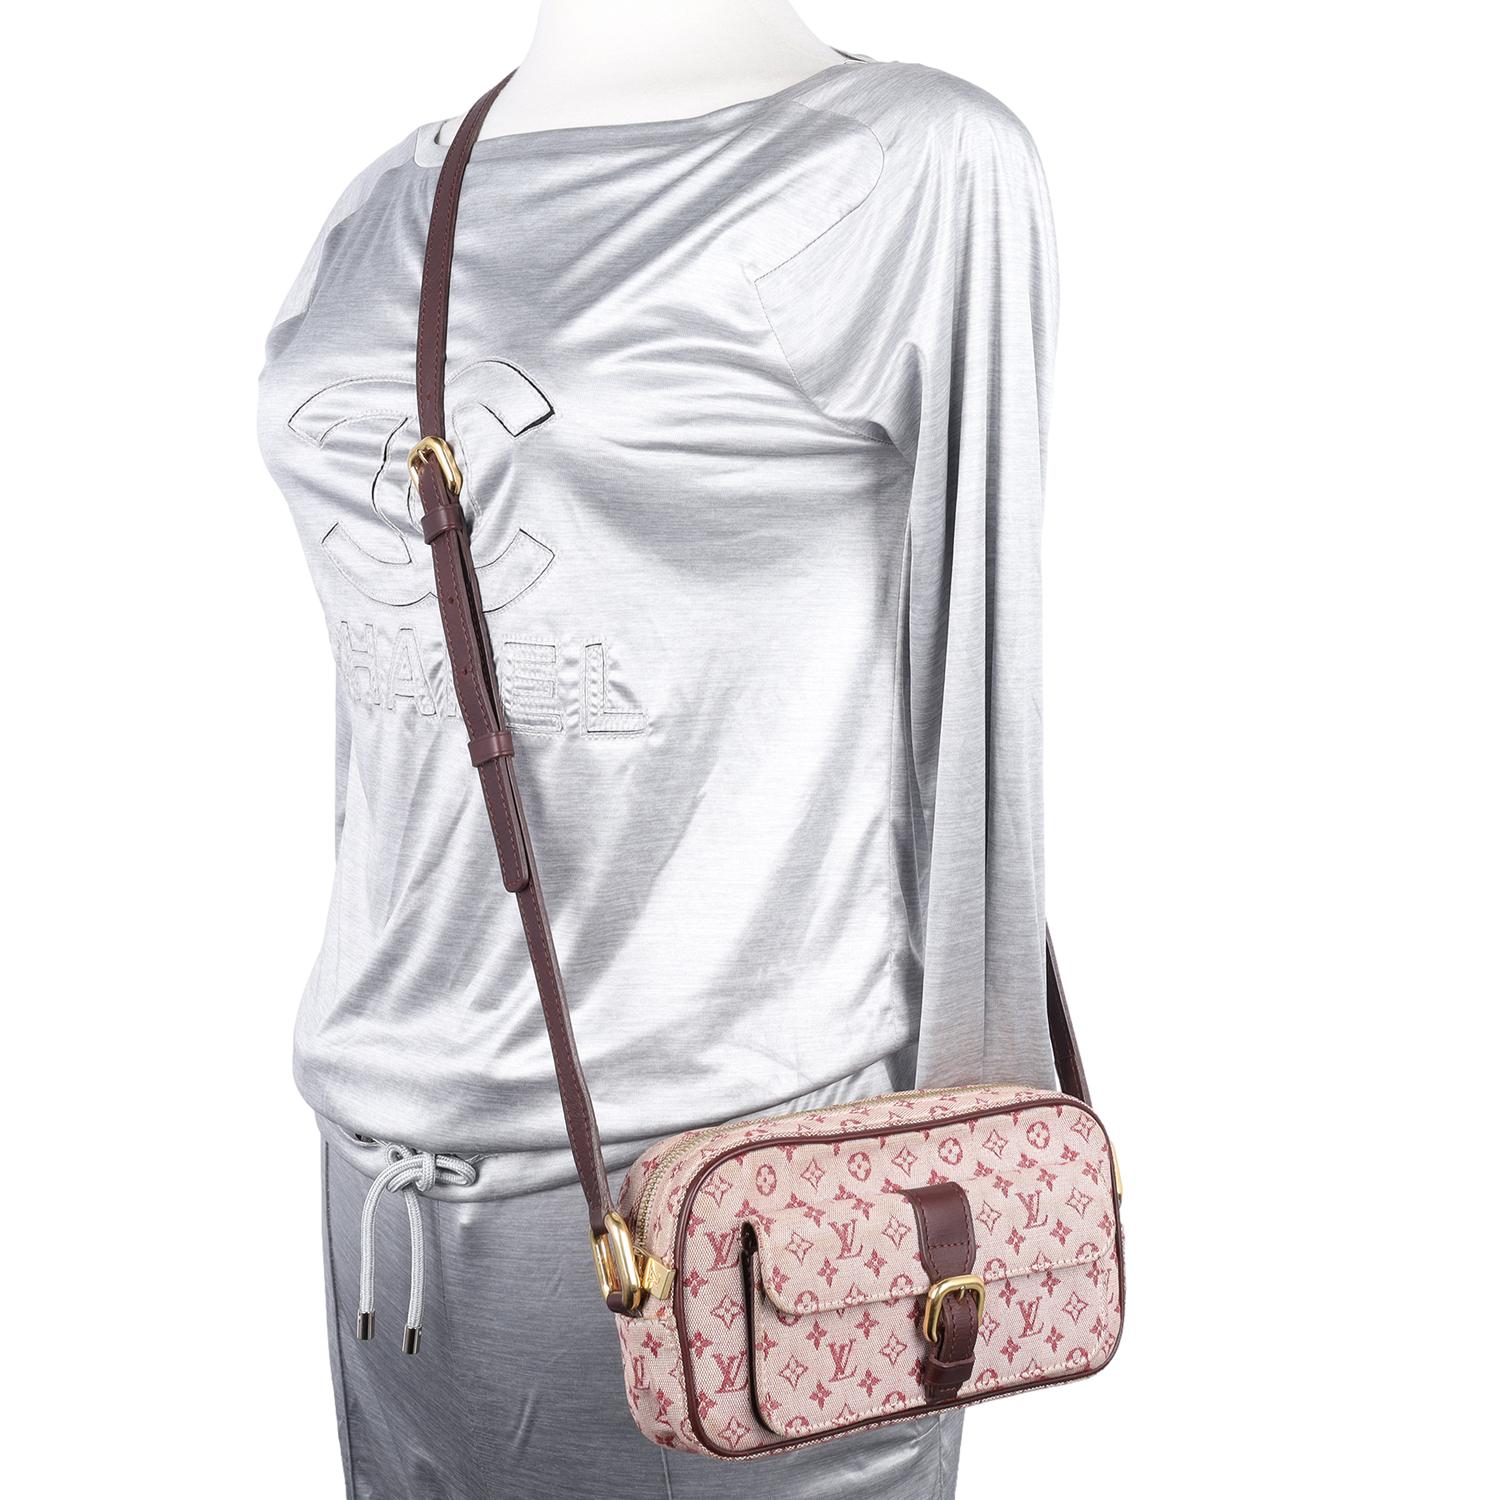 Authentische, gebrauchte Louis Vuitton Mini Lin Juliette Satchel Crossbody Bag in rosa. Die perfekte Tagestasche für die Reise. Merkmale: Mini Lin Monogram Canvas, verstellbarer Lederriemen, Reißverschluss oben, Steckfach vorne mit